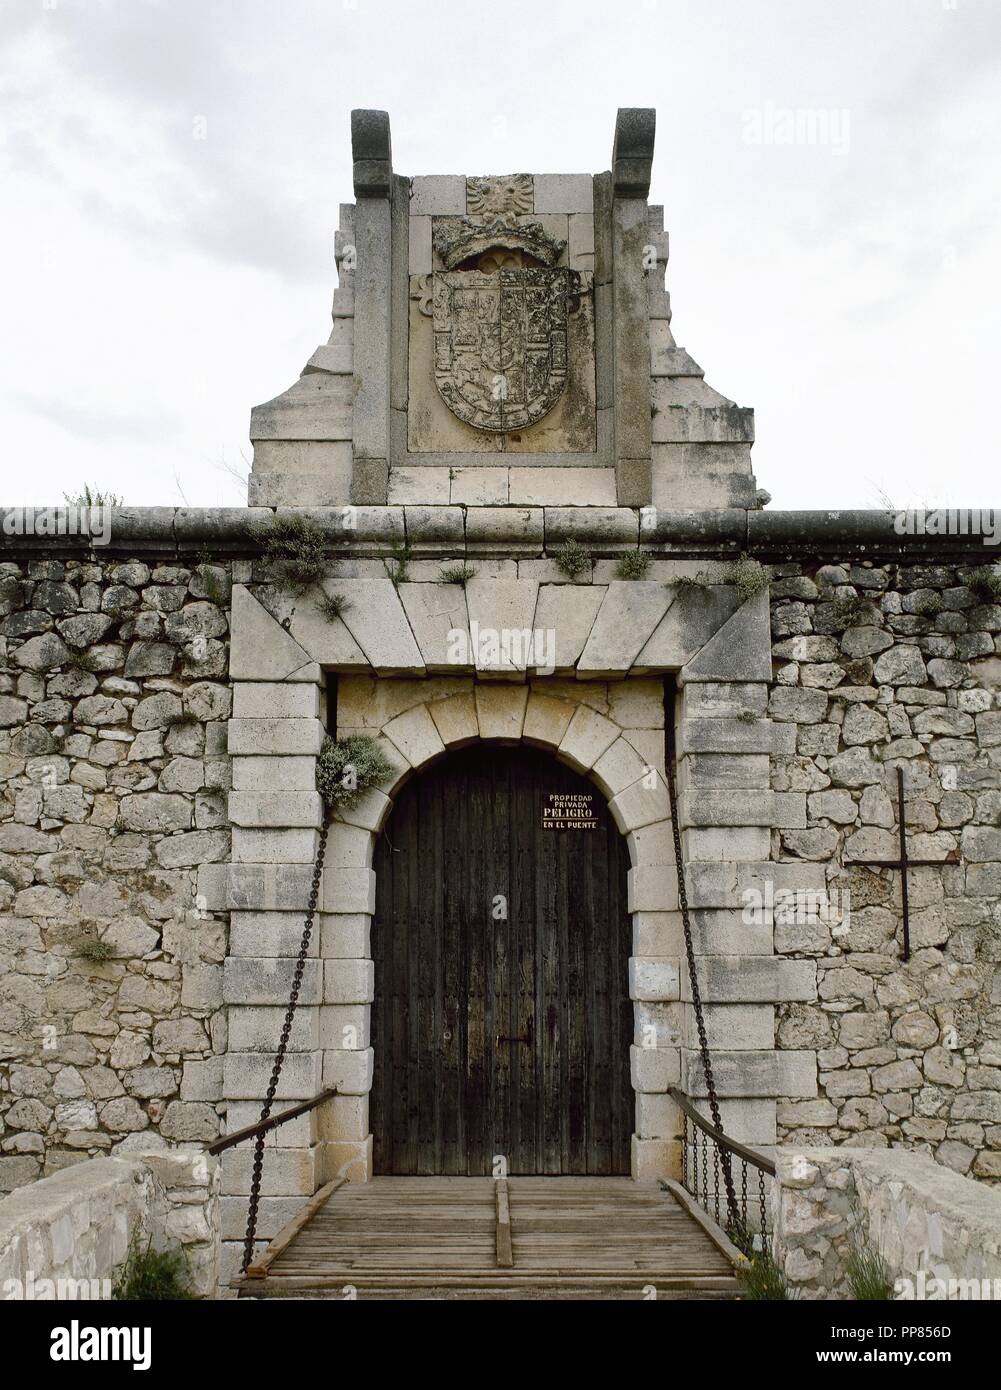 Spanien. Chinchón. Burg der Grafen. Zwischen 15. und 16. Jahrhundert erbaut. Von außen. Autonome Gemeinschaft Madrid. Stockfoto